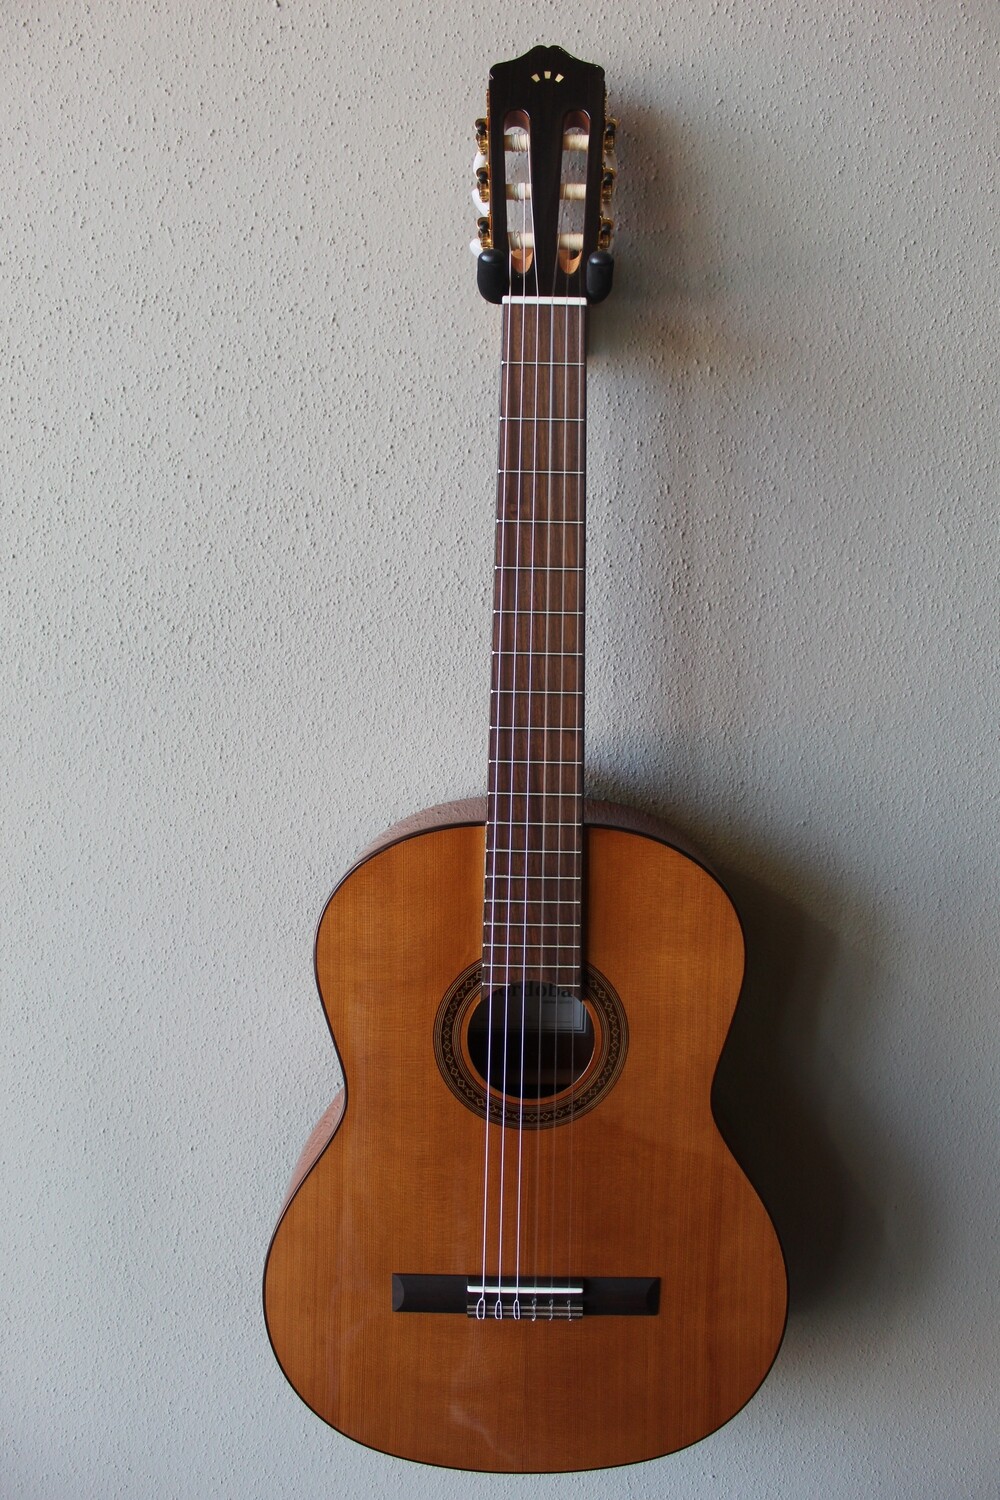 Cordoba C5 Cedar Top Classical Guitar with Gig Bag